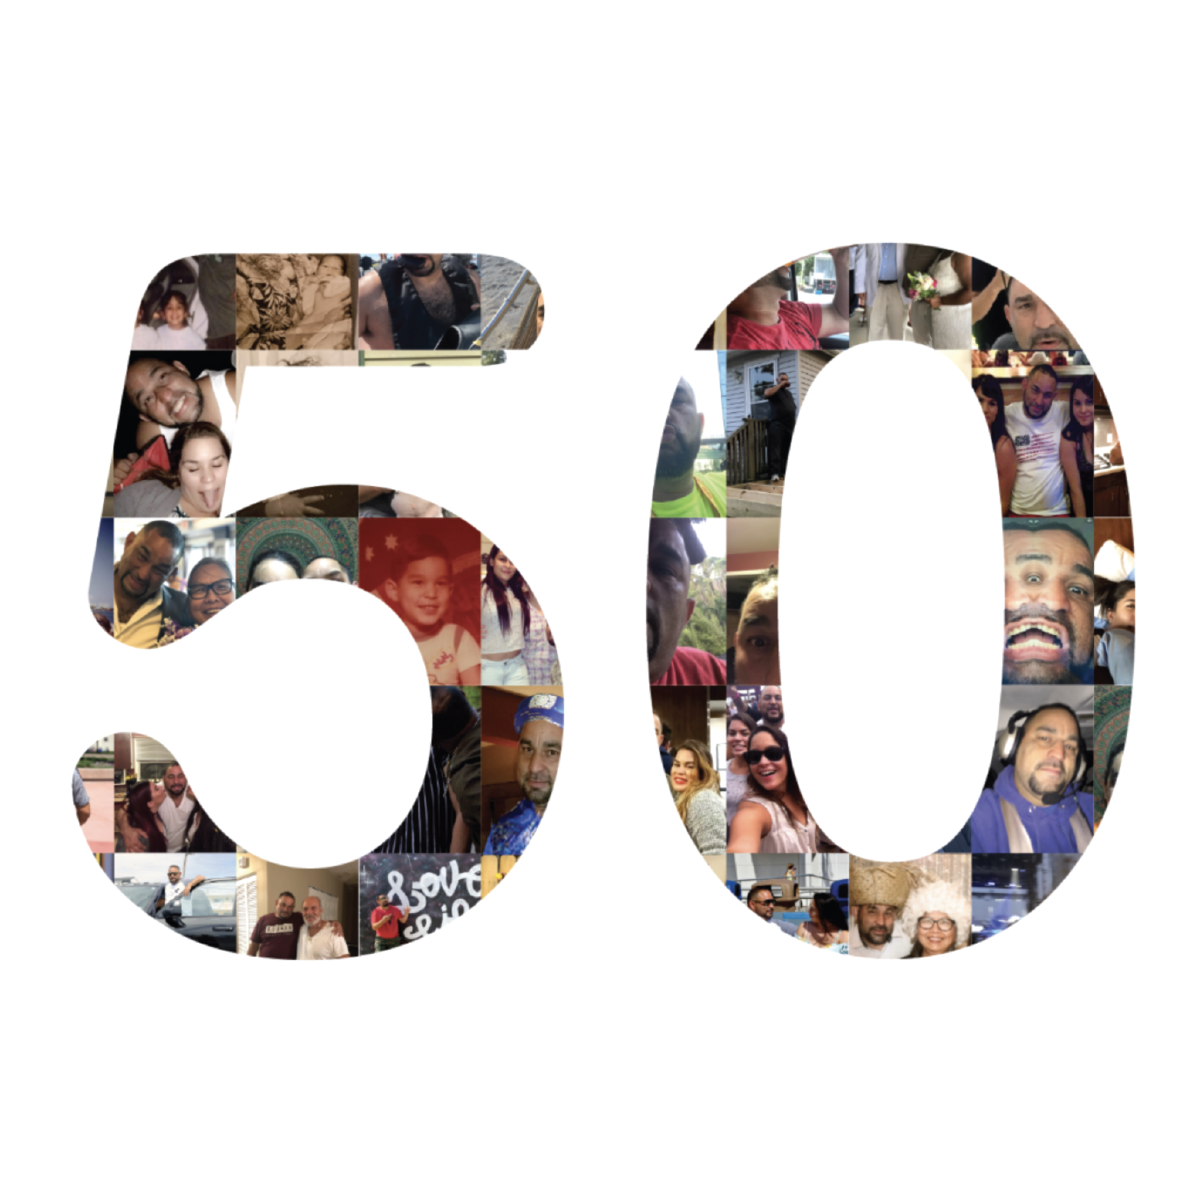 50 Years of Chino